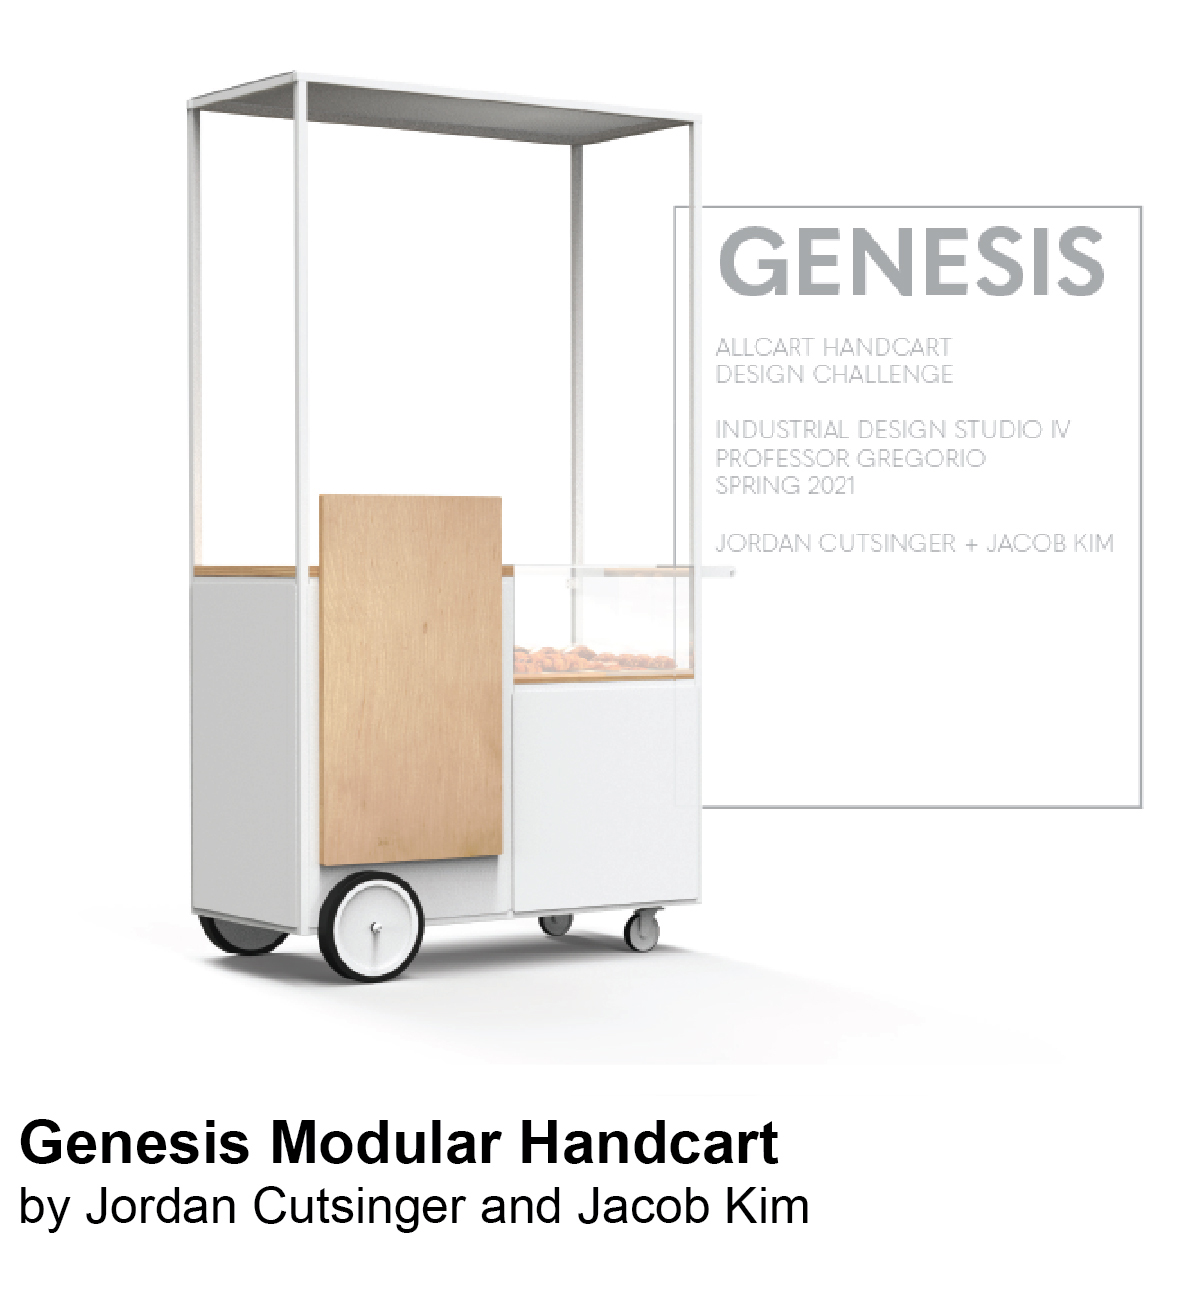 Genesis Handcart by Jordan Cutsinger and Jacob Kim 